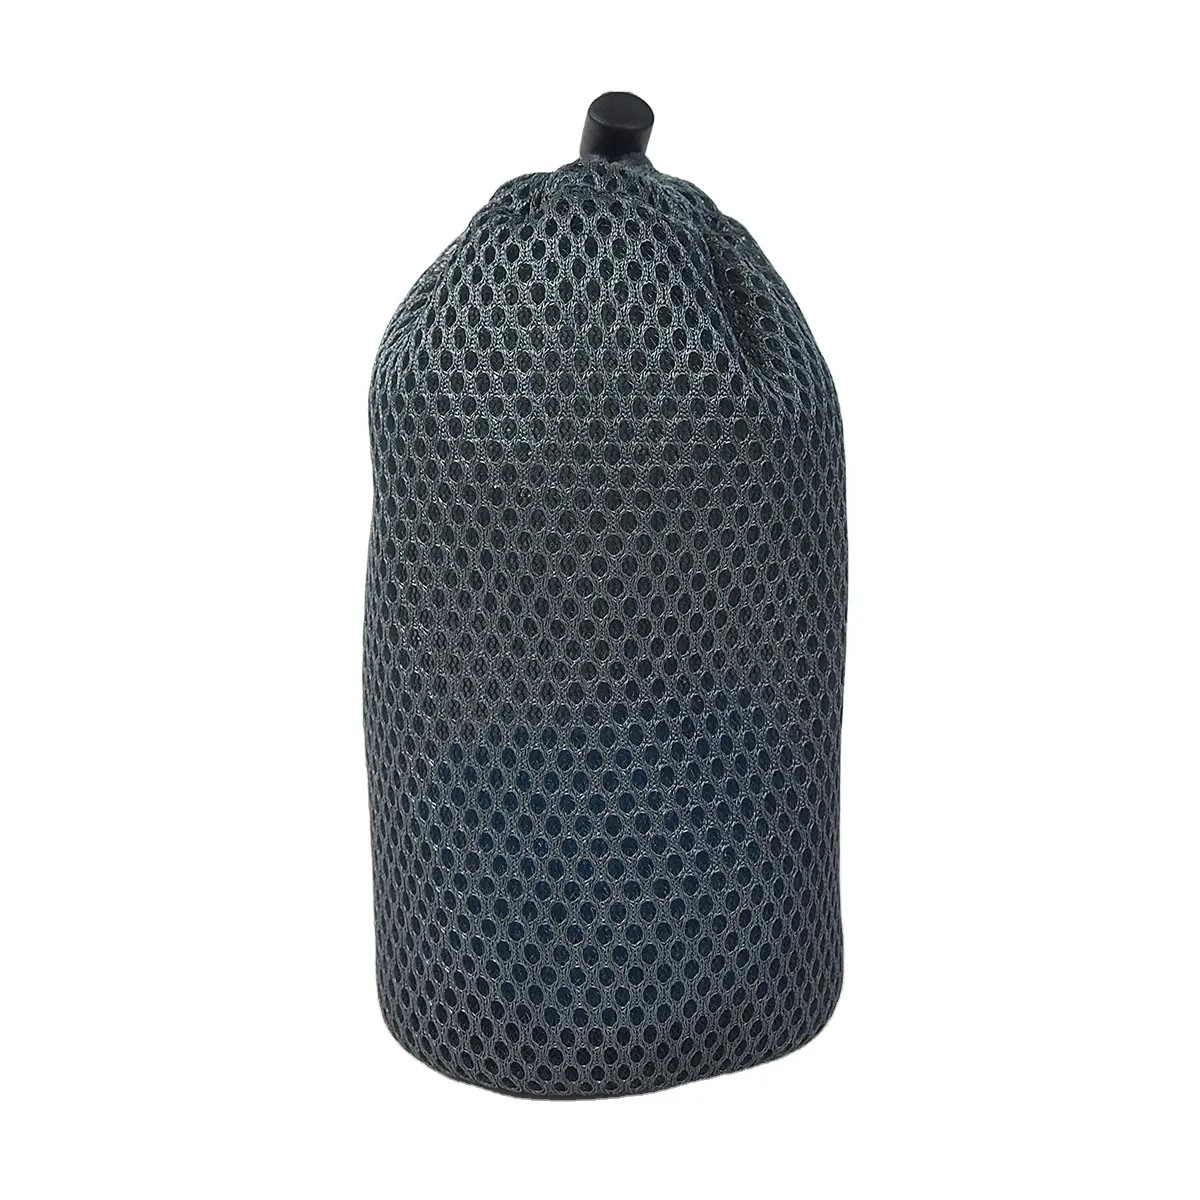 Maille de conception personnalisée de haute qualité en gros qualité Micron recyclable réutilisable respirant coton biologique maille sac Net bois de chauffage